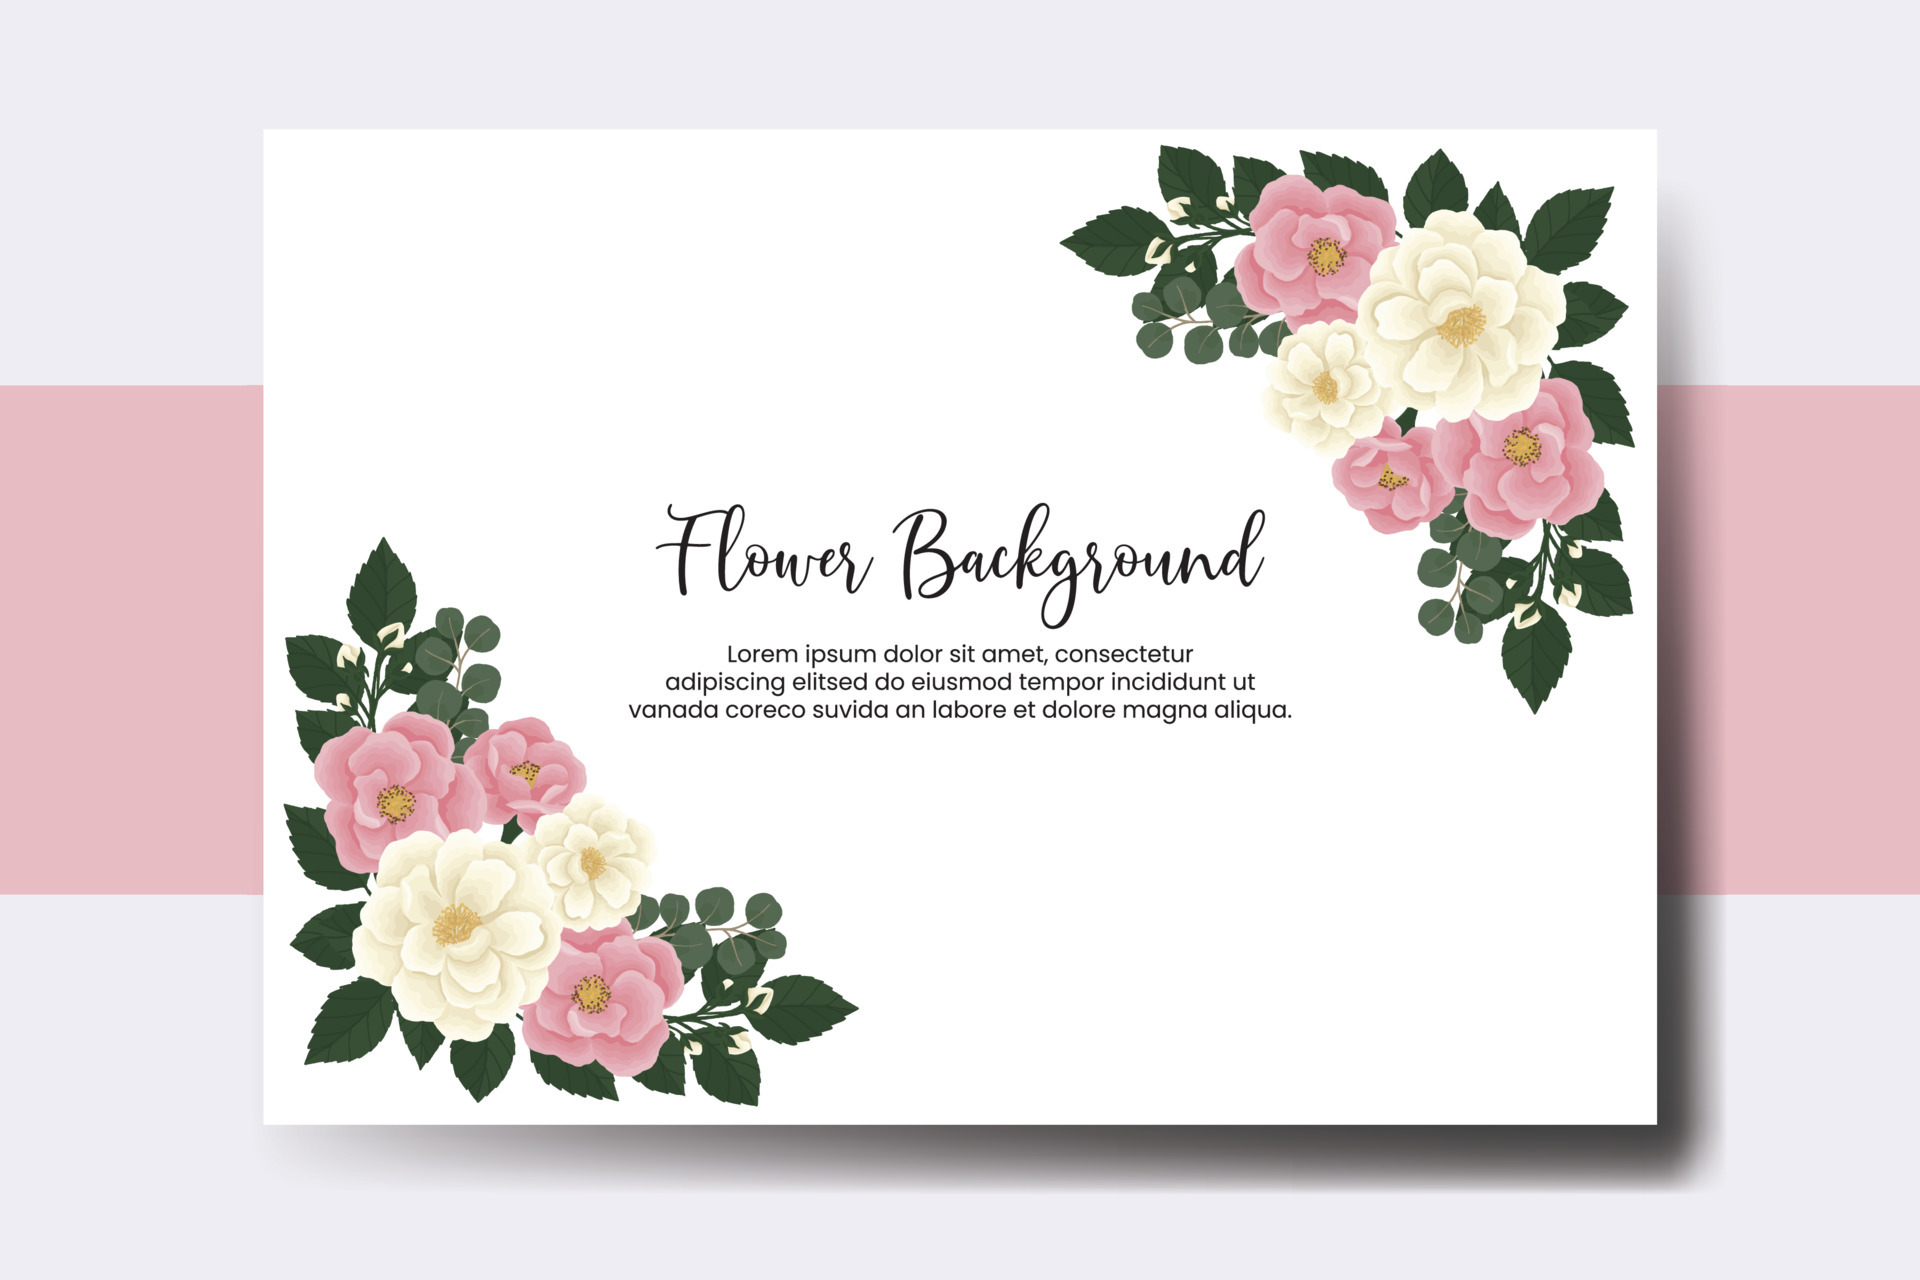 Nếu bạn đang tìm kiếm một bộ sưu tập banner cưới nền hoa và tranh nước vẽ tay kỹ thuật số, thì đừng bỏ qua các hình ảnh liên quan đến từ khóa này. Với nhiều lựa chọn phong phú, hoa đẹp và tinh tế, bạn sẽ dễ dàng tìm thấy sản phẩm hoàn hảo cho ngày cưới của mình.